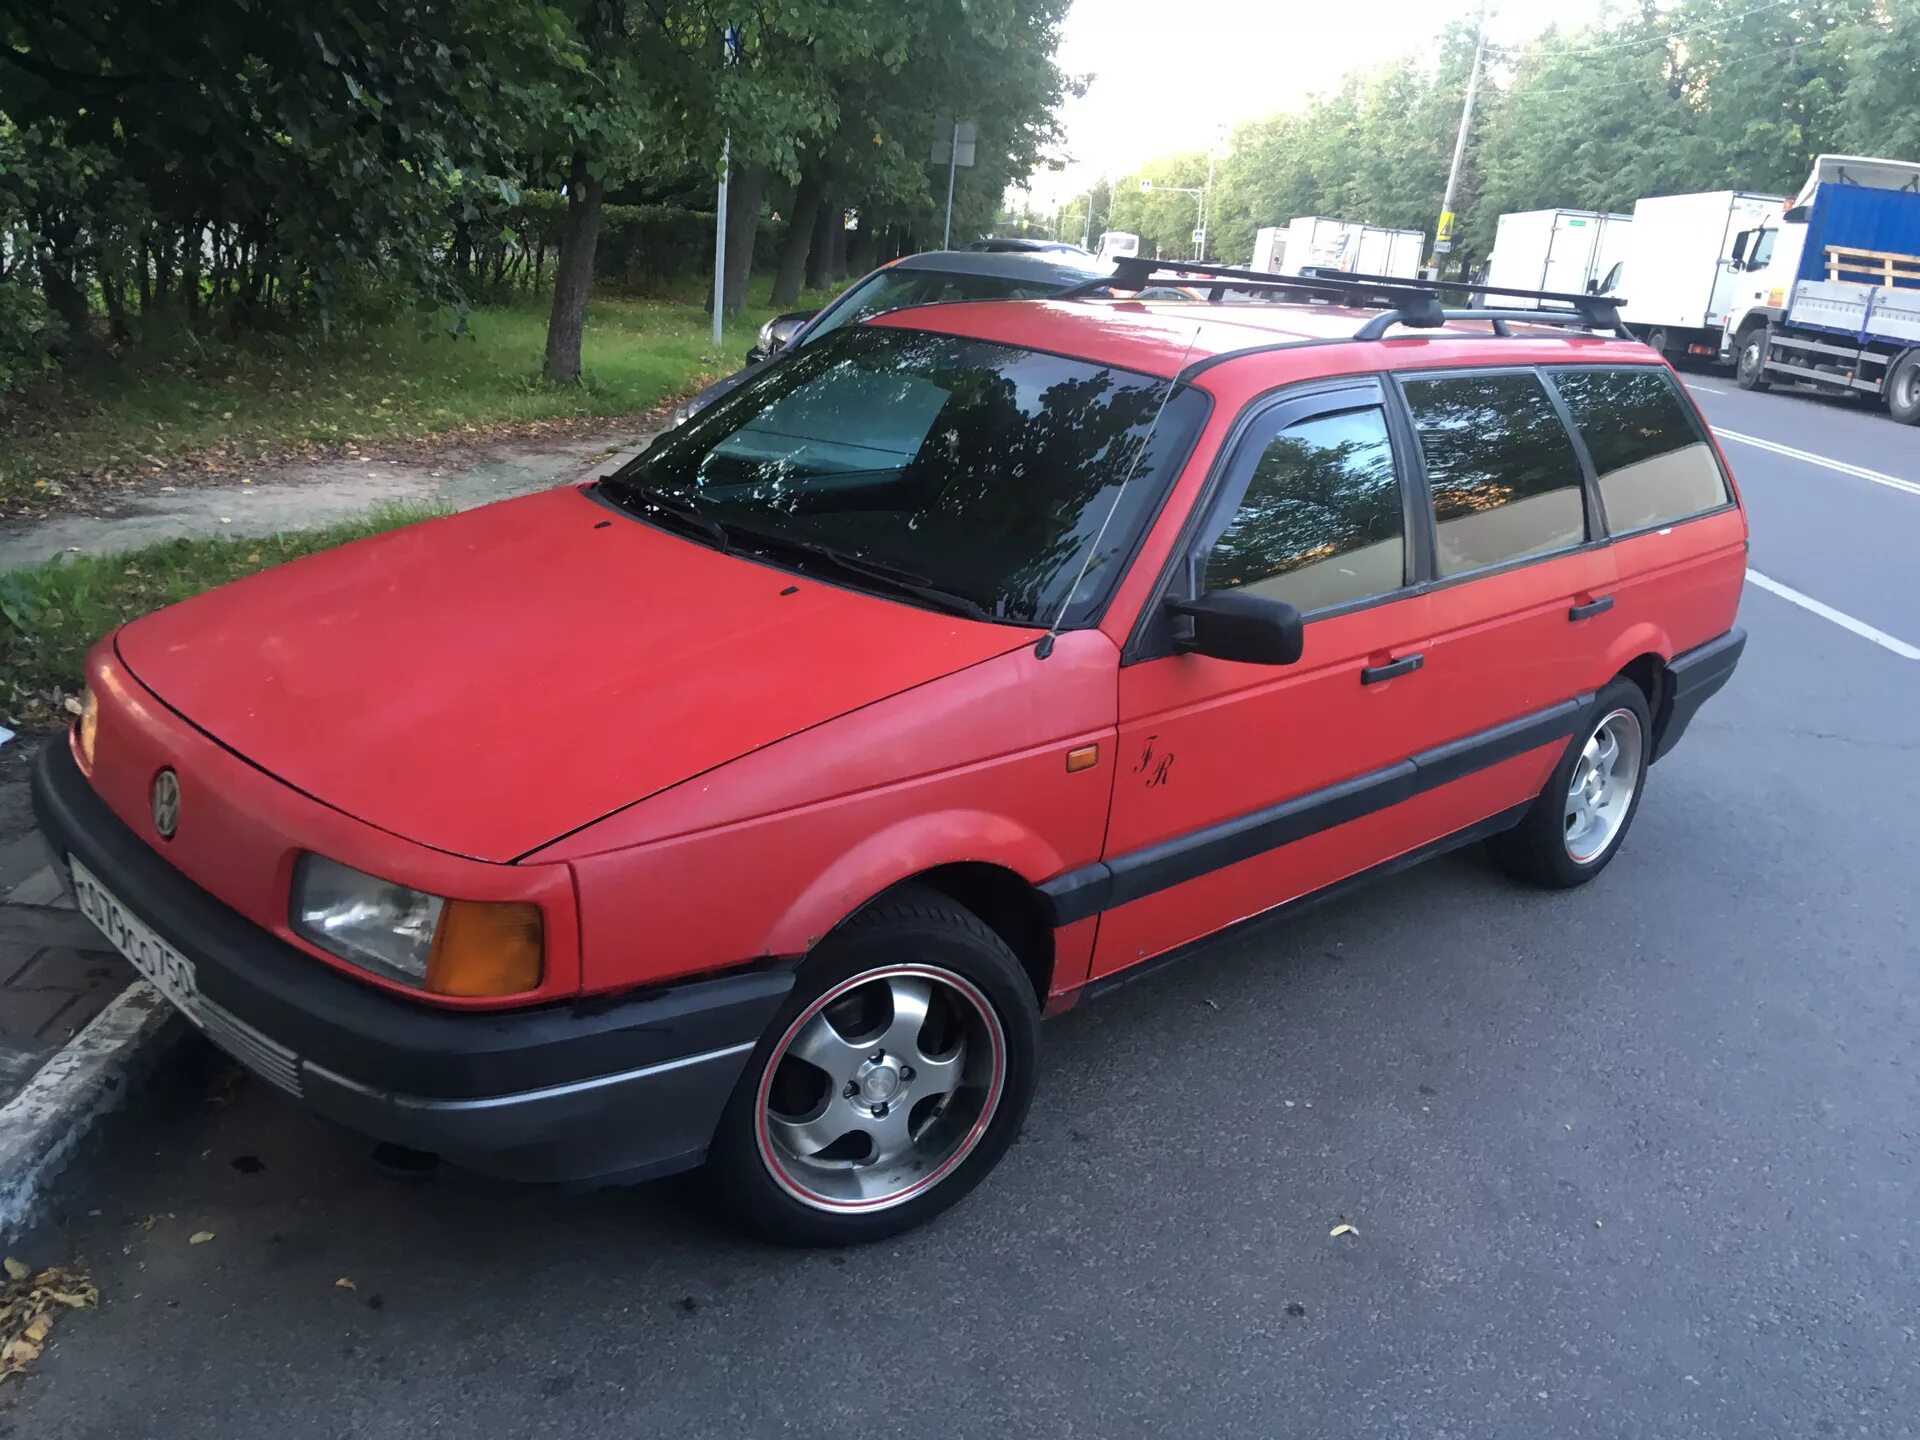 Volkswagen Passat 1989 года. Volkswagen Passat variant 1989. Фольксваген Пассат 1989г. Volkswagen Passat, 1989 универсал серый.